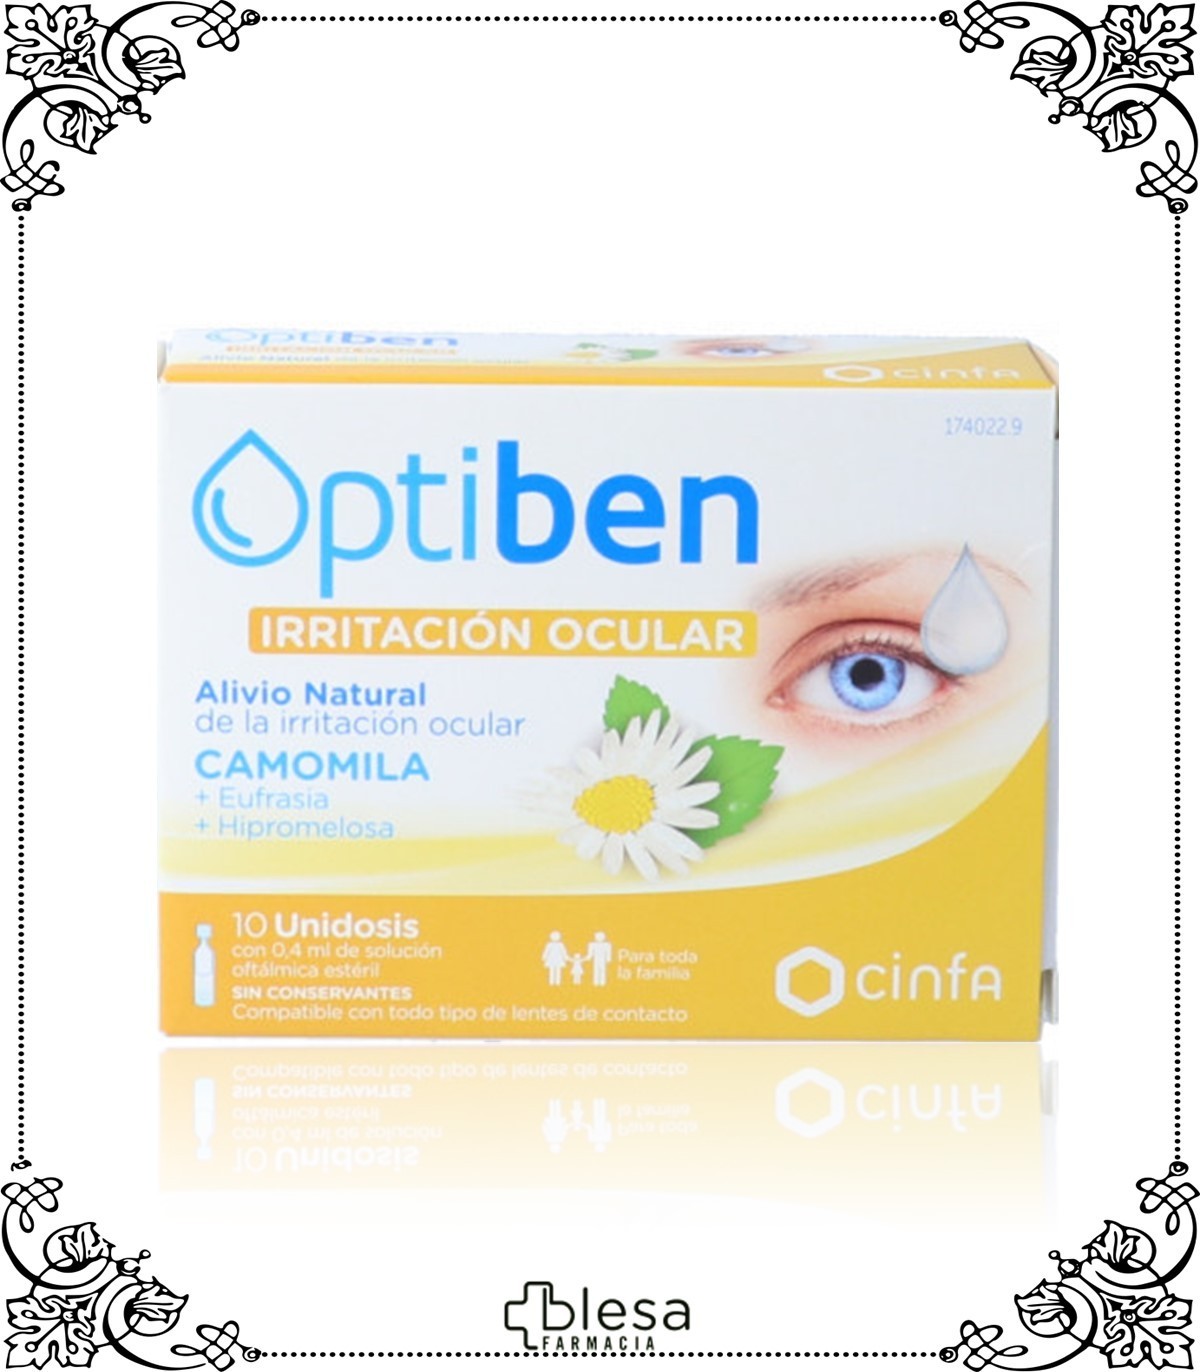 Cinfa Optiben Ojos Secos Gotas Sequedad Ocular, 10 ml